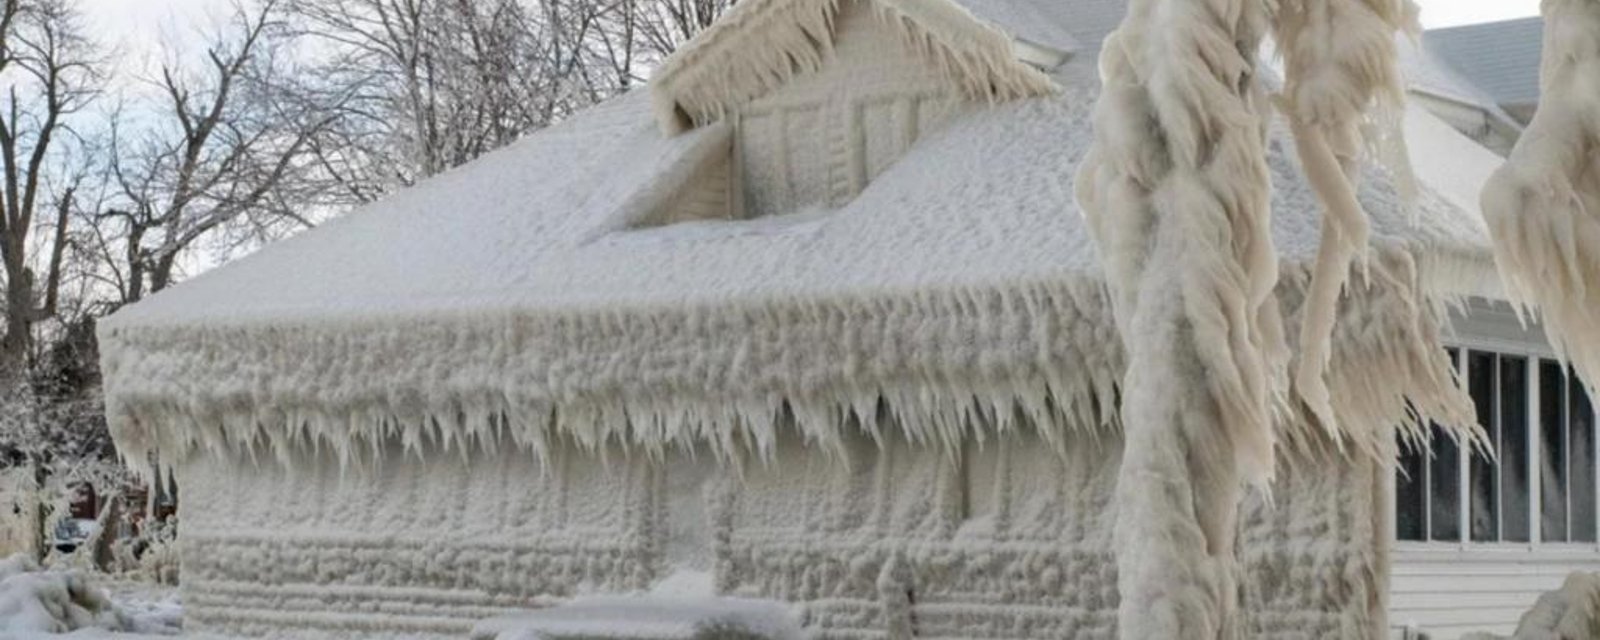 La température glaciale a transformé cette maison en gigantesque sculpture de glace